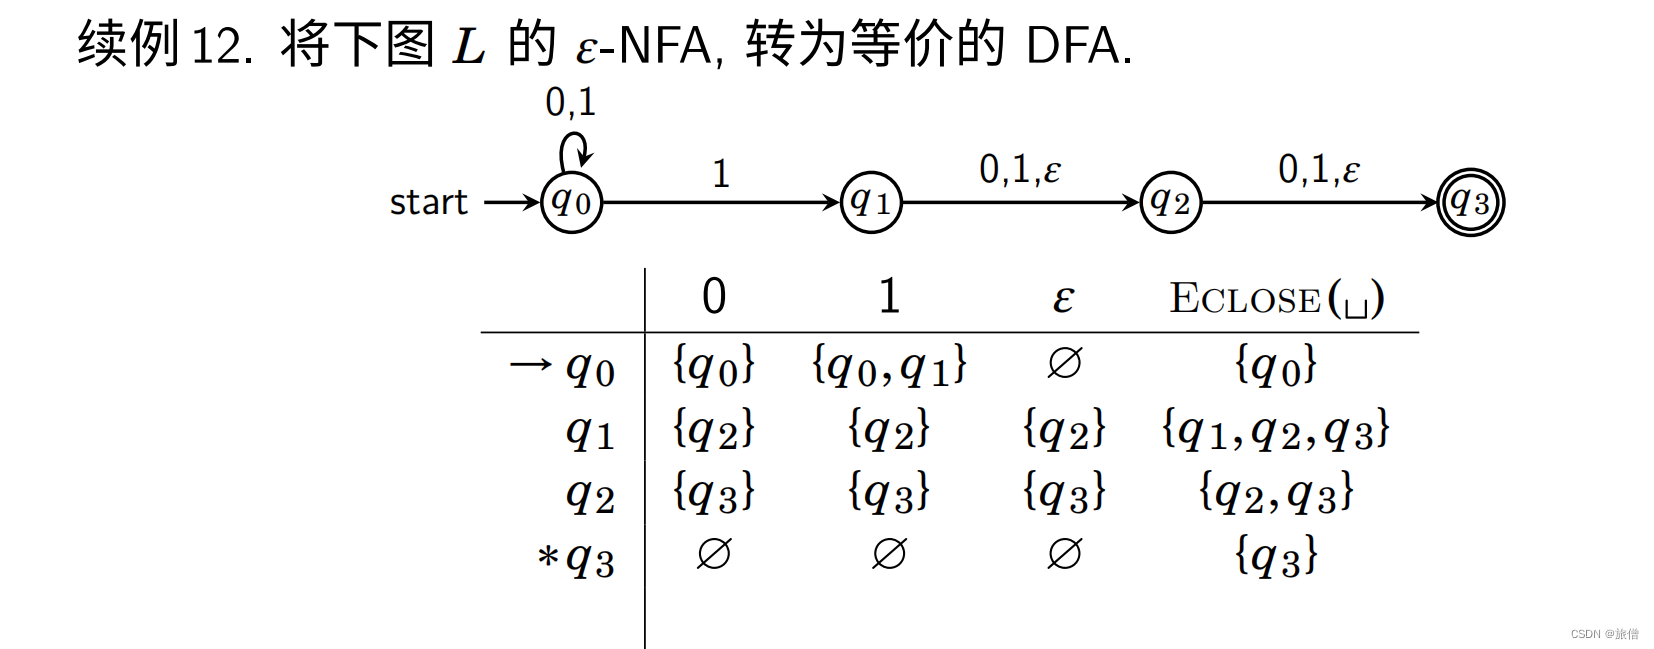 形式语言和自动机总结DFA、NFA正则语言